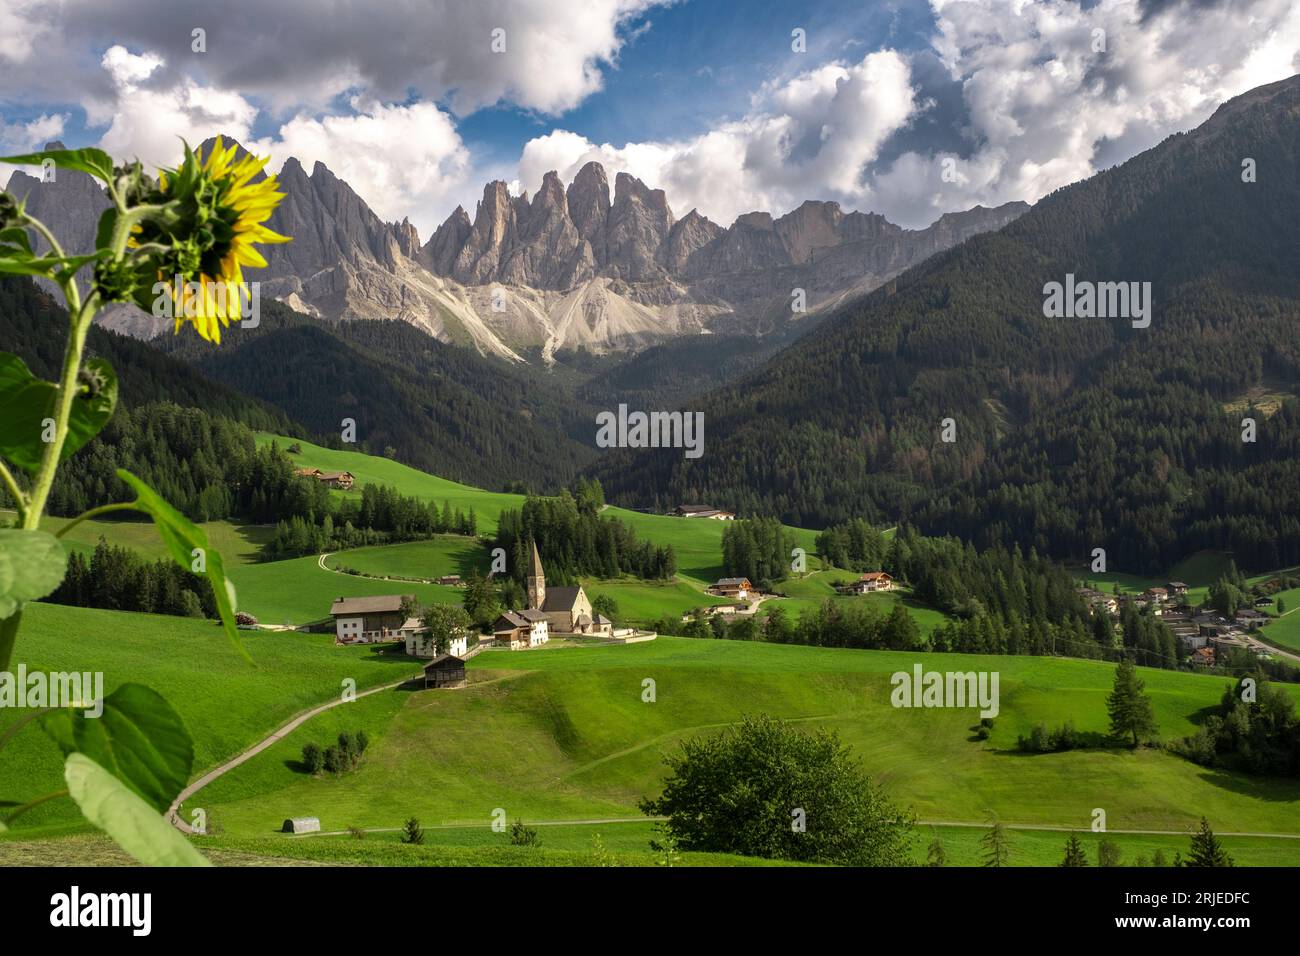 St Margaret, Dolomites beautyful landscape Stock Photo